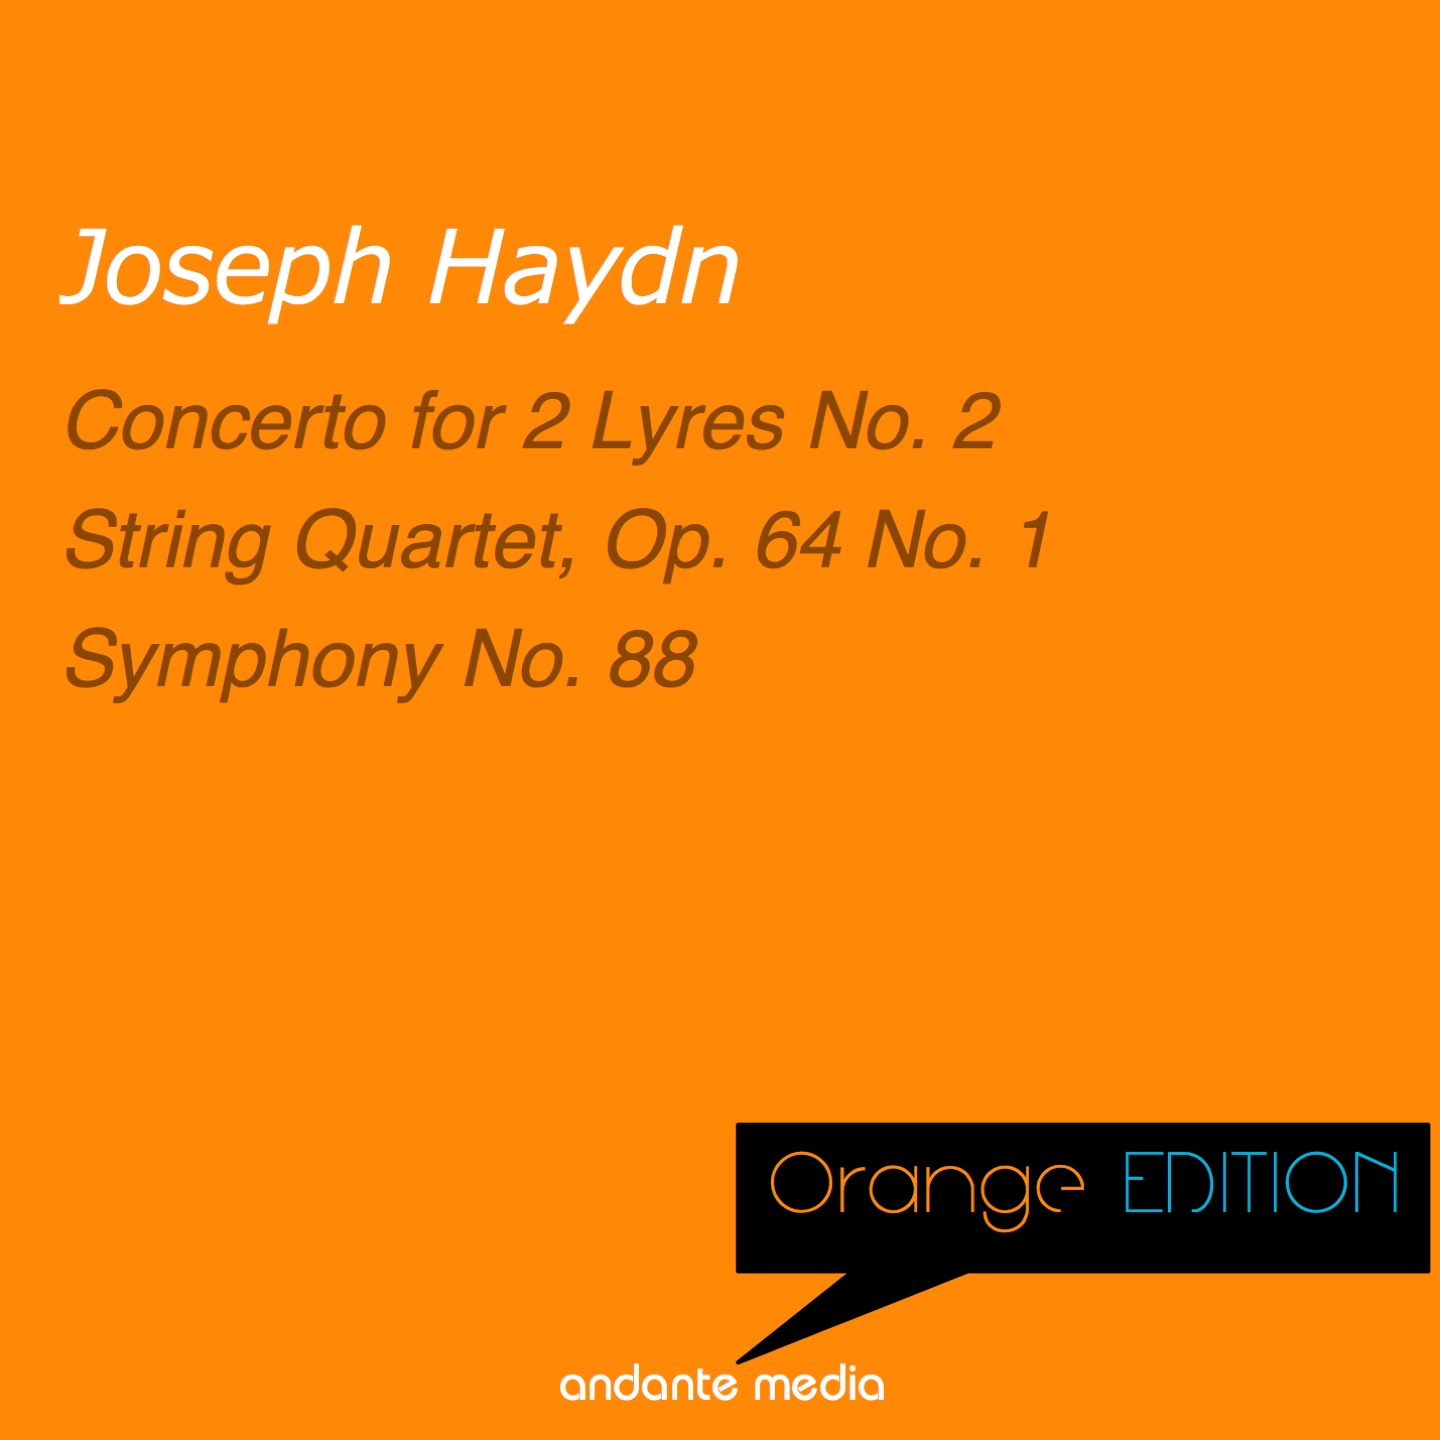 Orange Edition - Haydn: Concerto for 2 Lyres No. 2 & String Quartet, Op. 64 No. 1